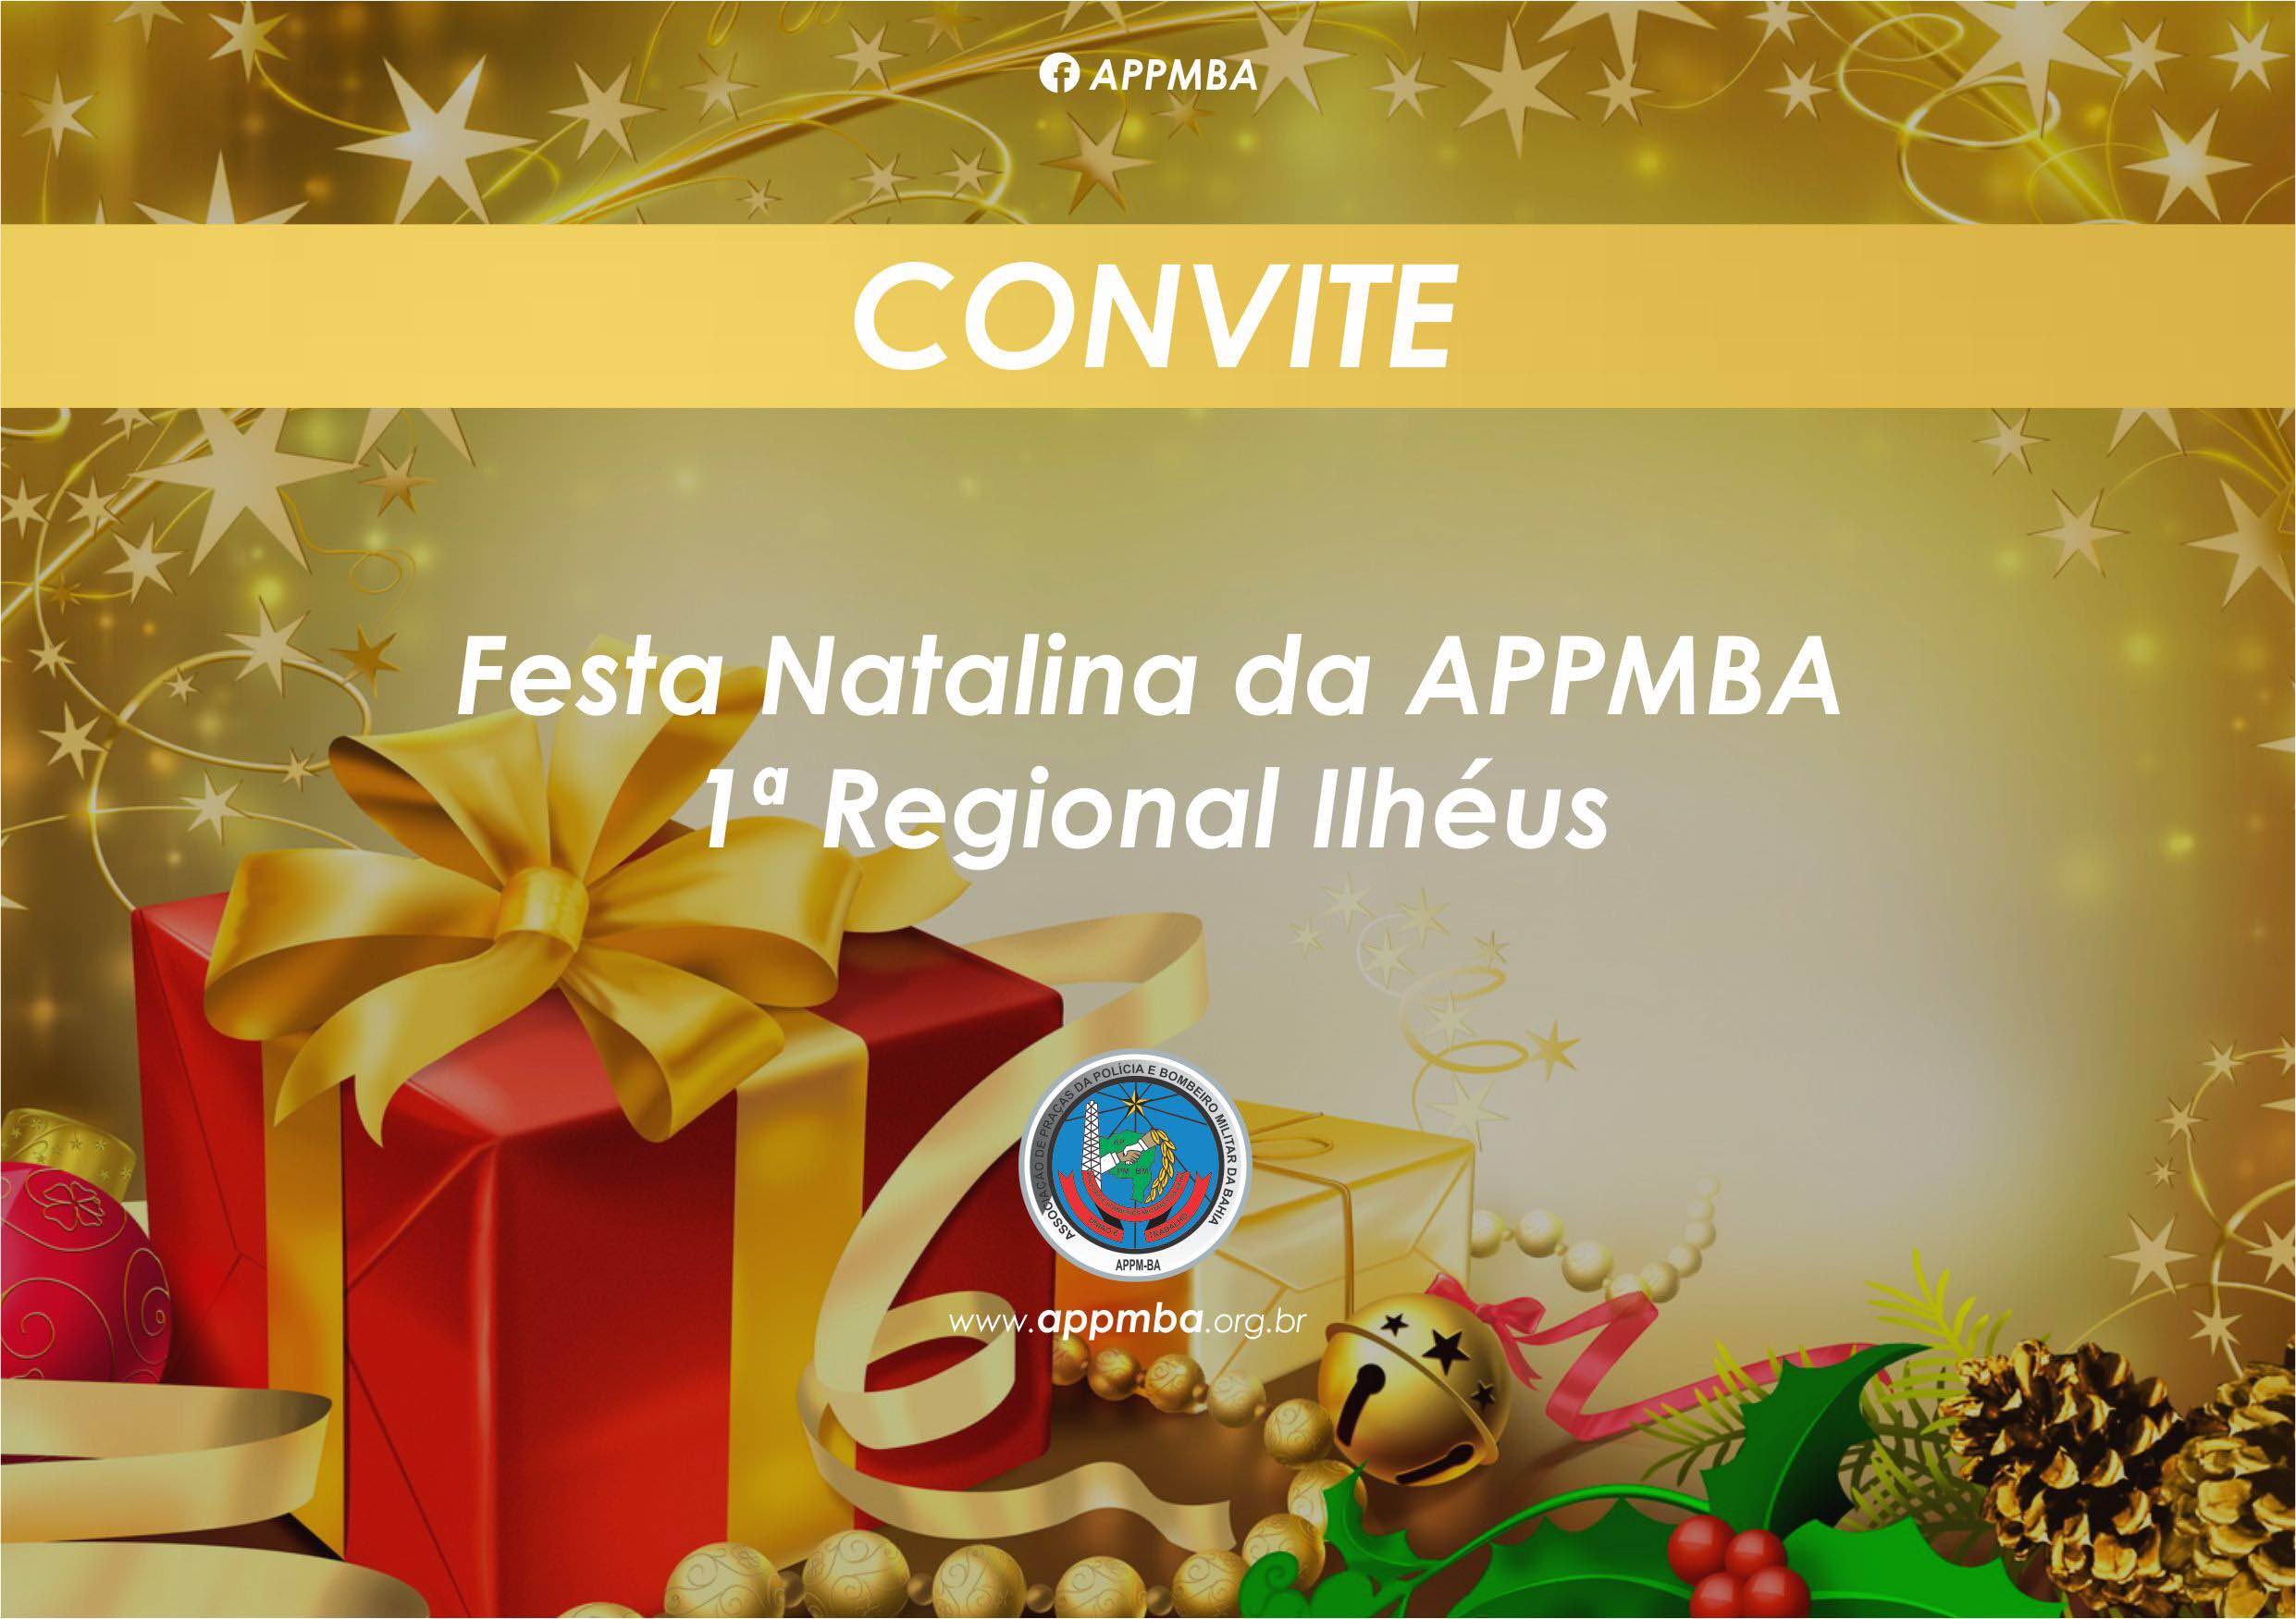 APPMBA / 1ª Regional Ilhéus convida associados para confraternização natalina